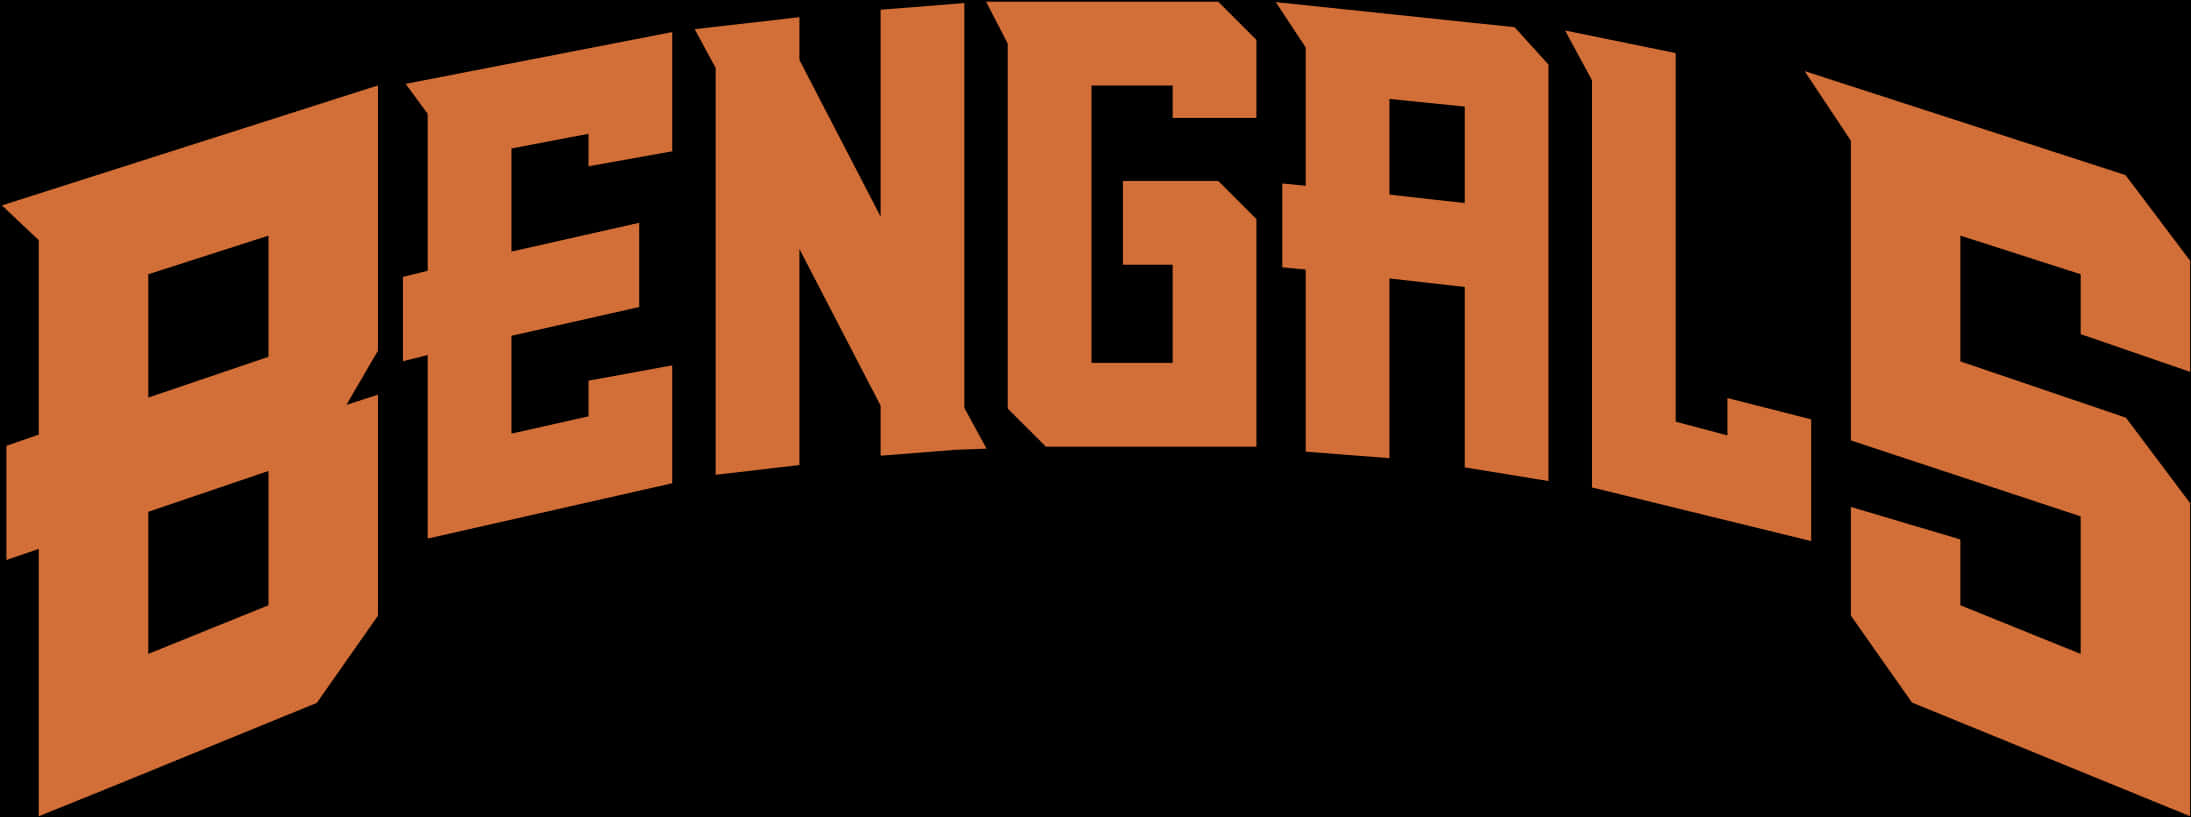 Cincinnati Bengals Text Logo PNG image